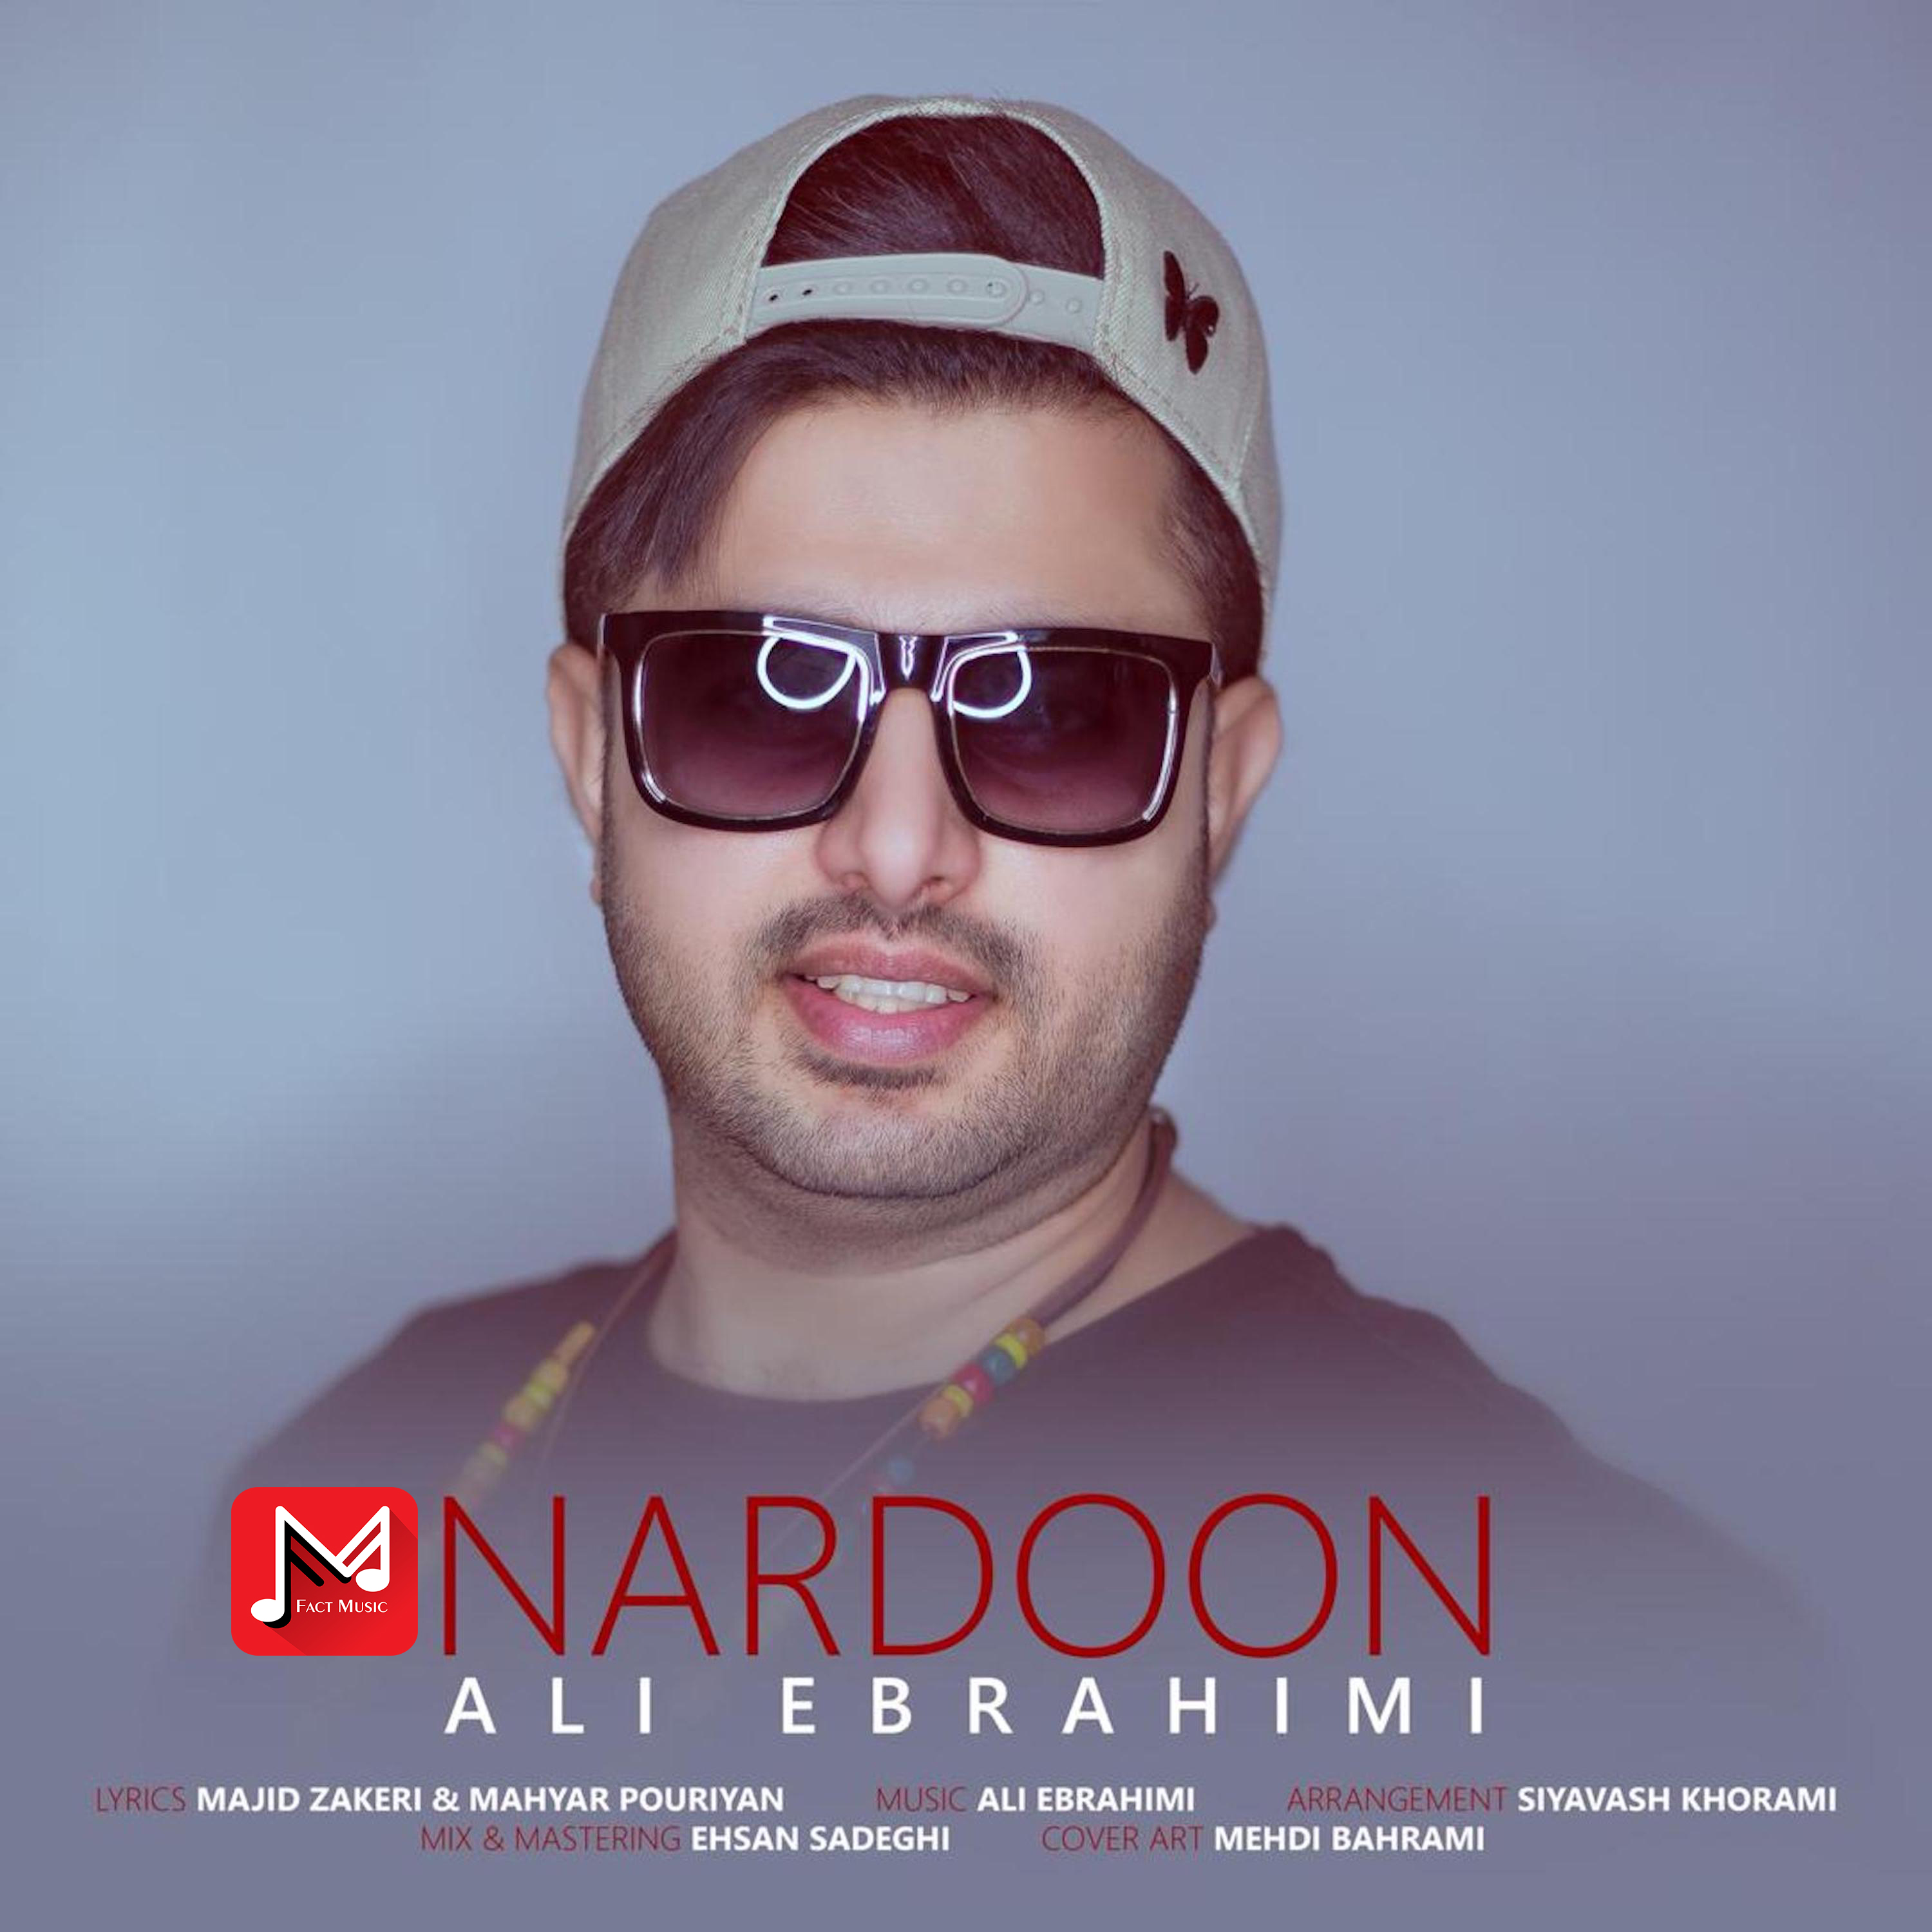  دانلود آهنگ جدید علی ابراهیمی - ناردون | Download New Music By Ali Ebrahimi - Nardoon